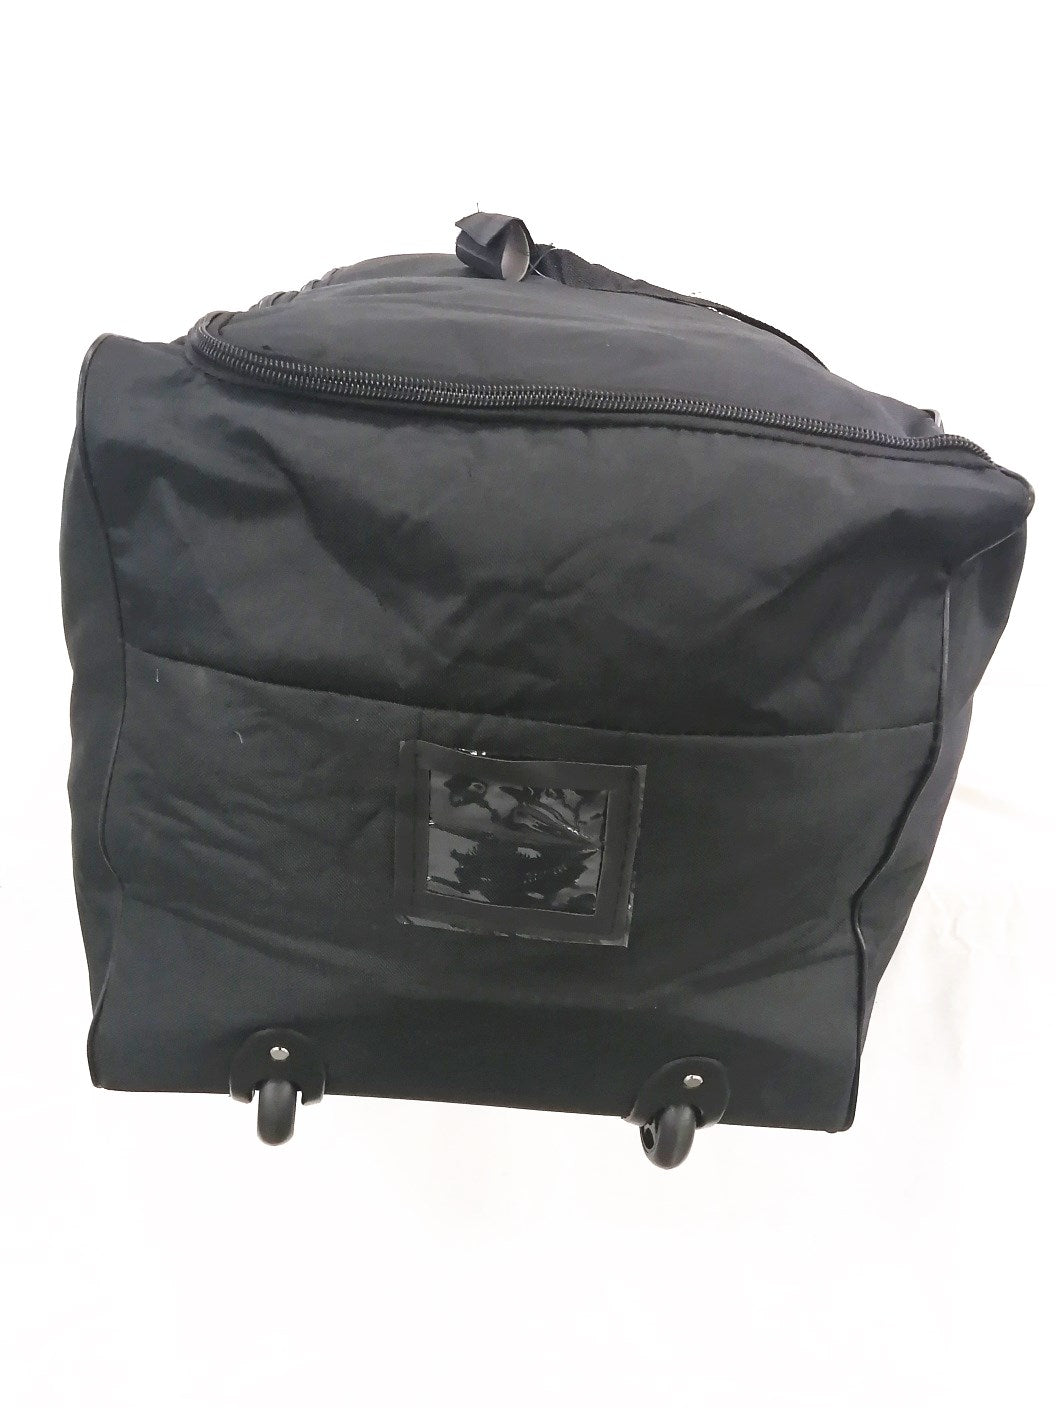 duffel bag with wheels medium 34